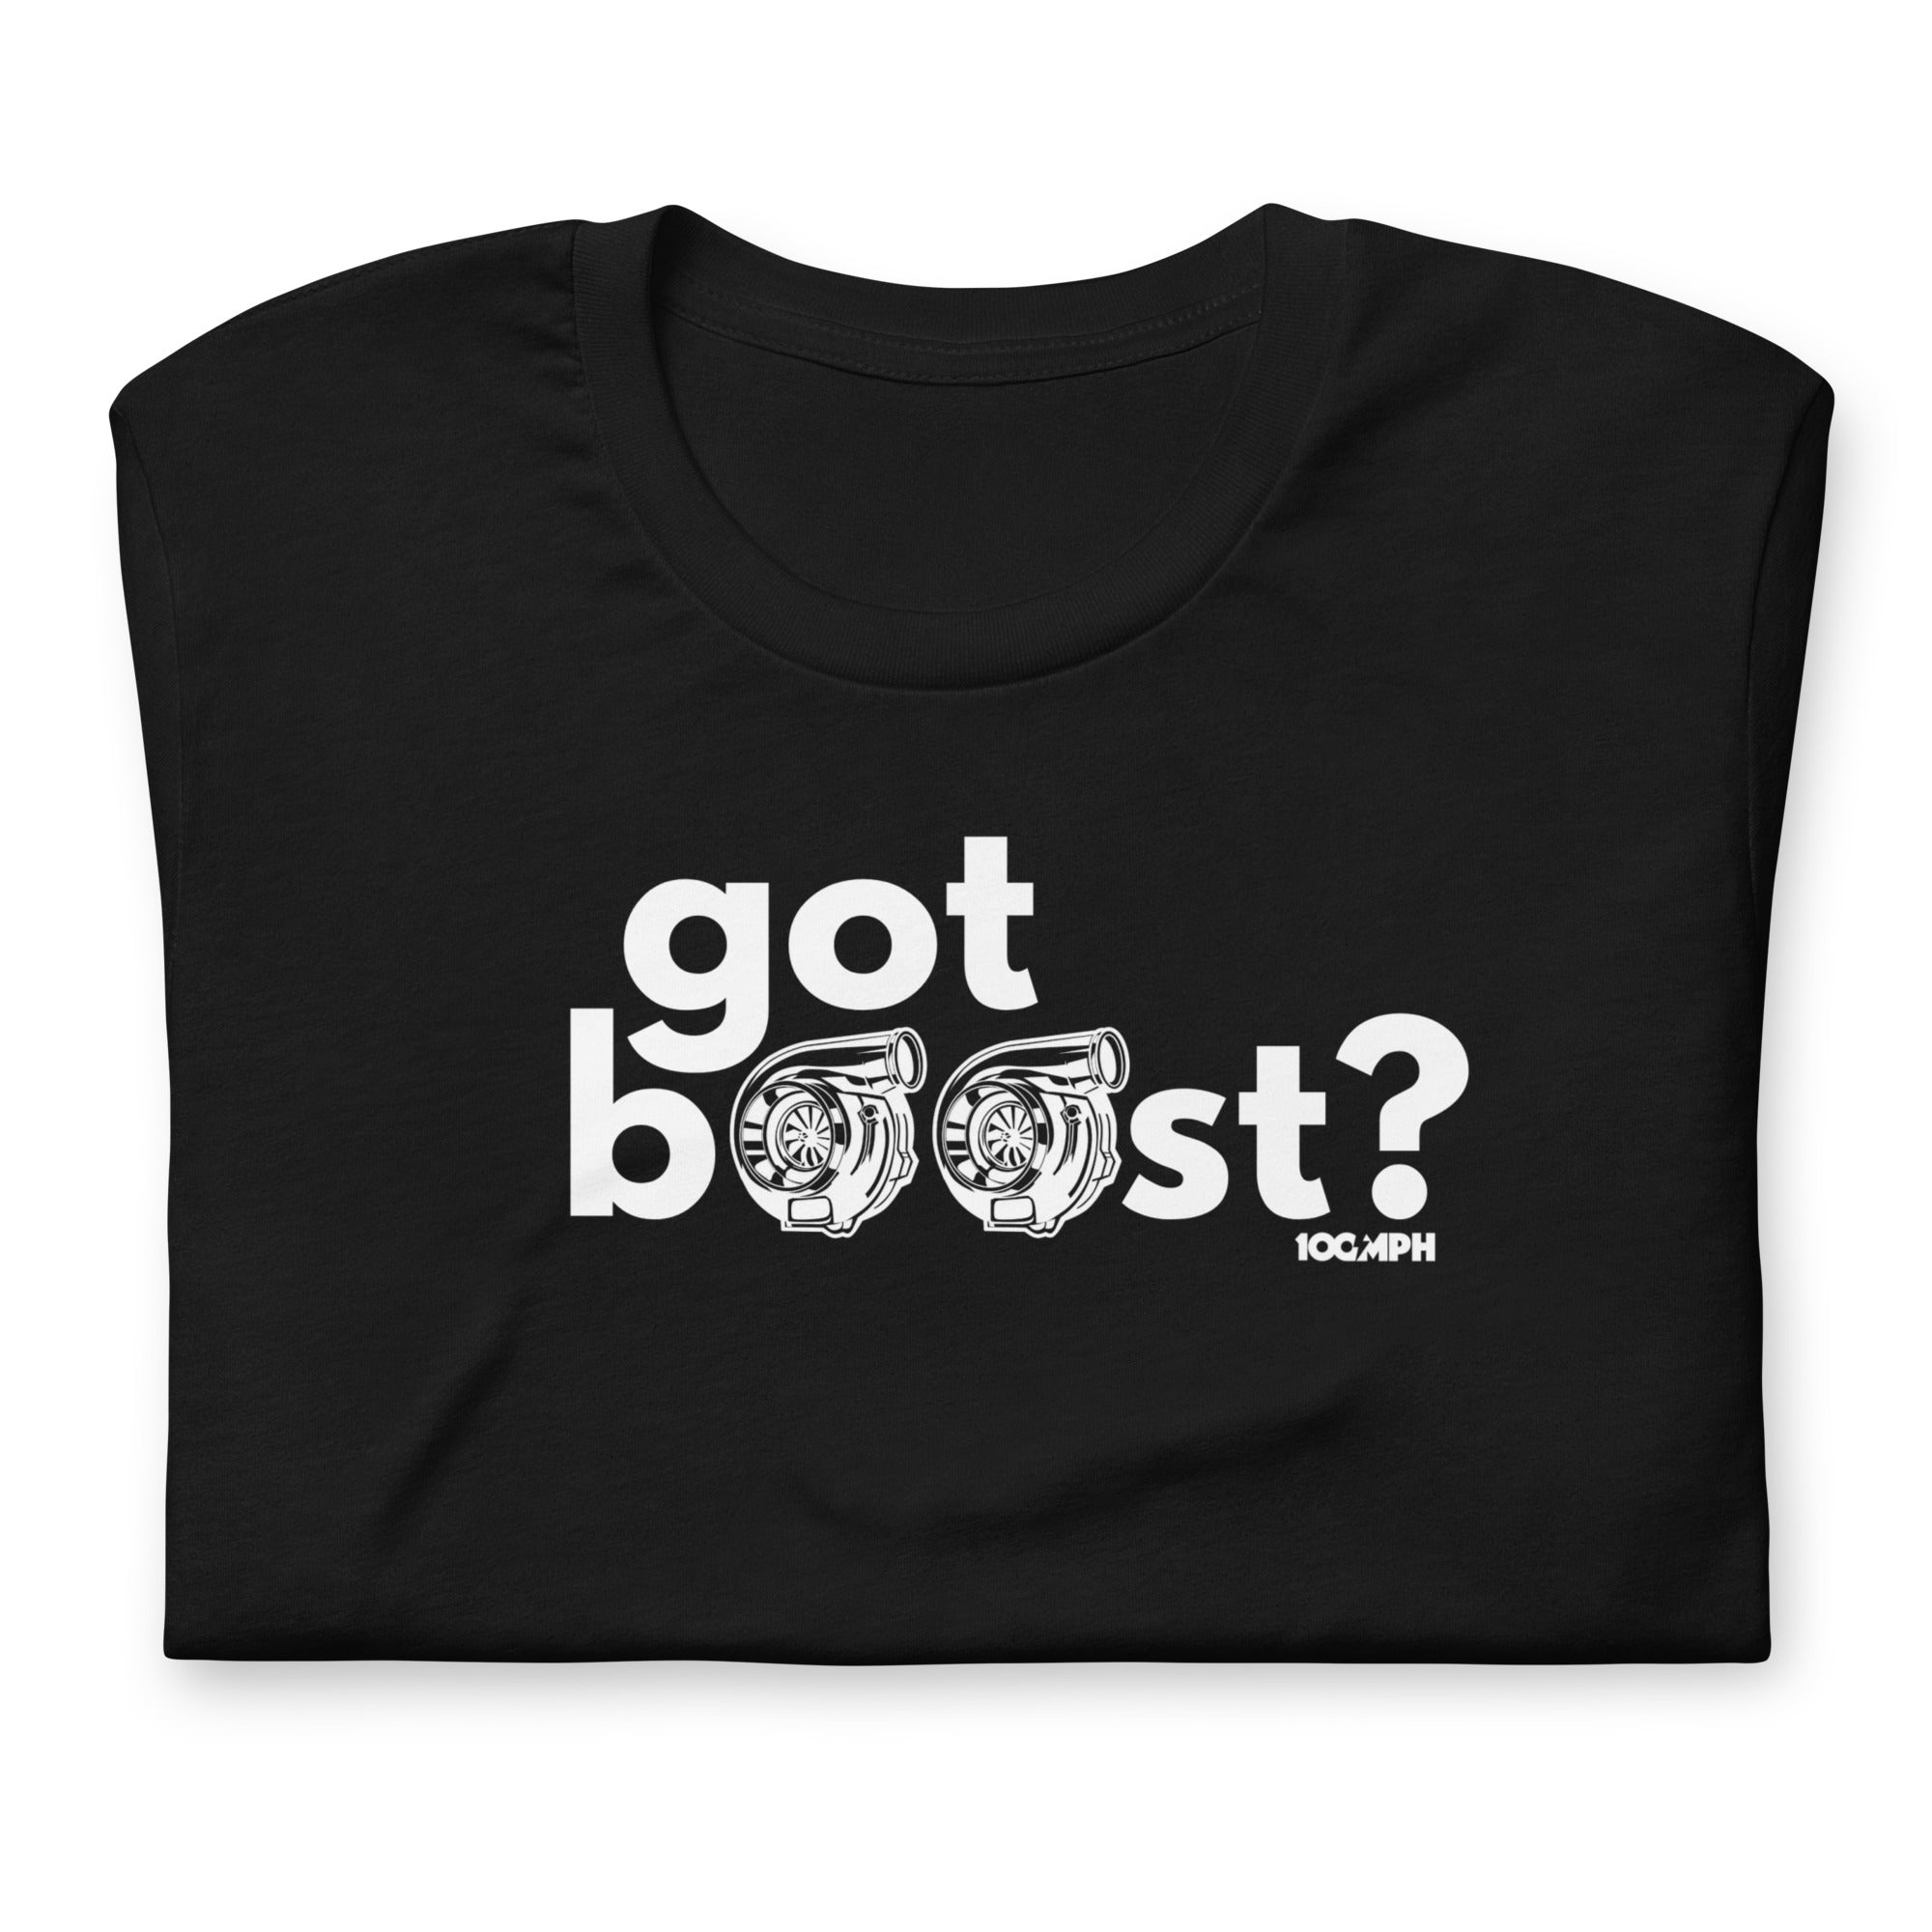 Got Boost?